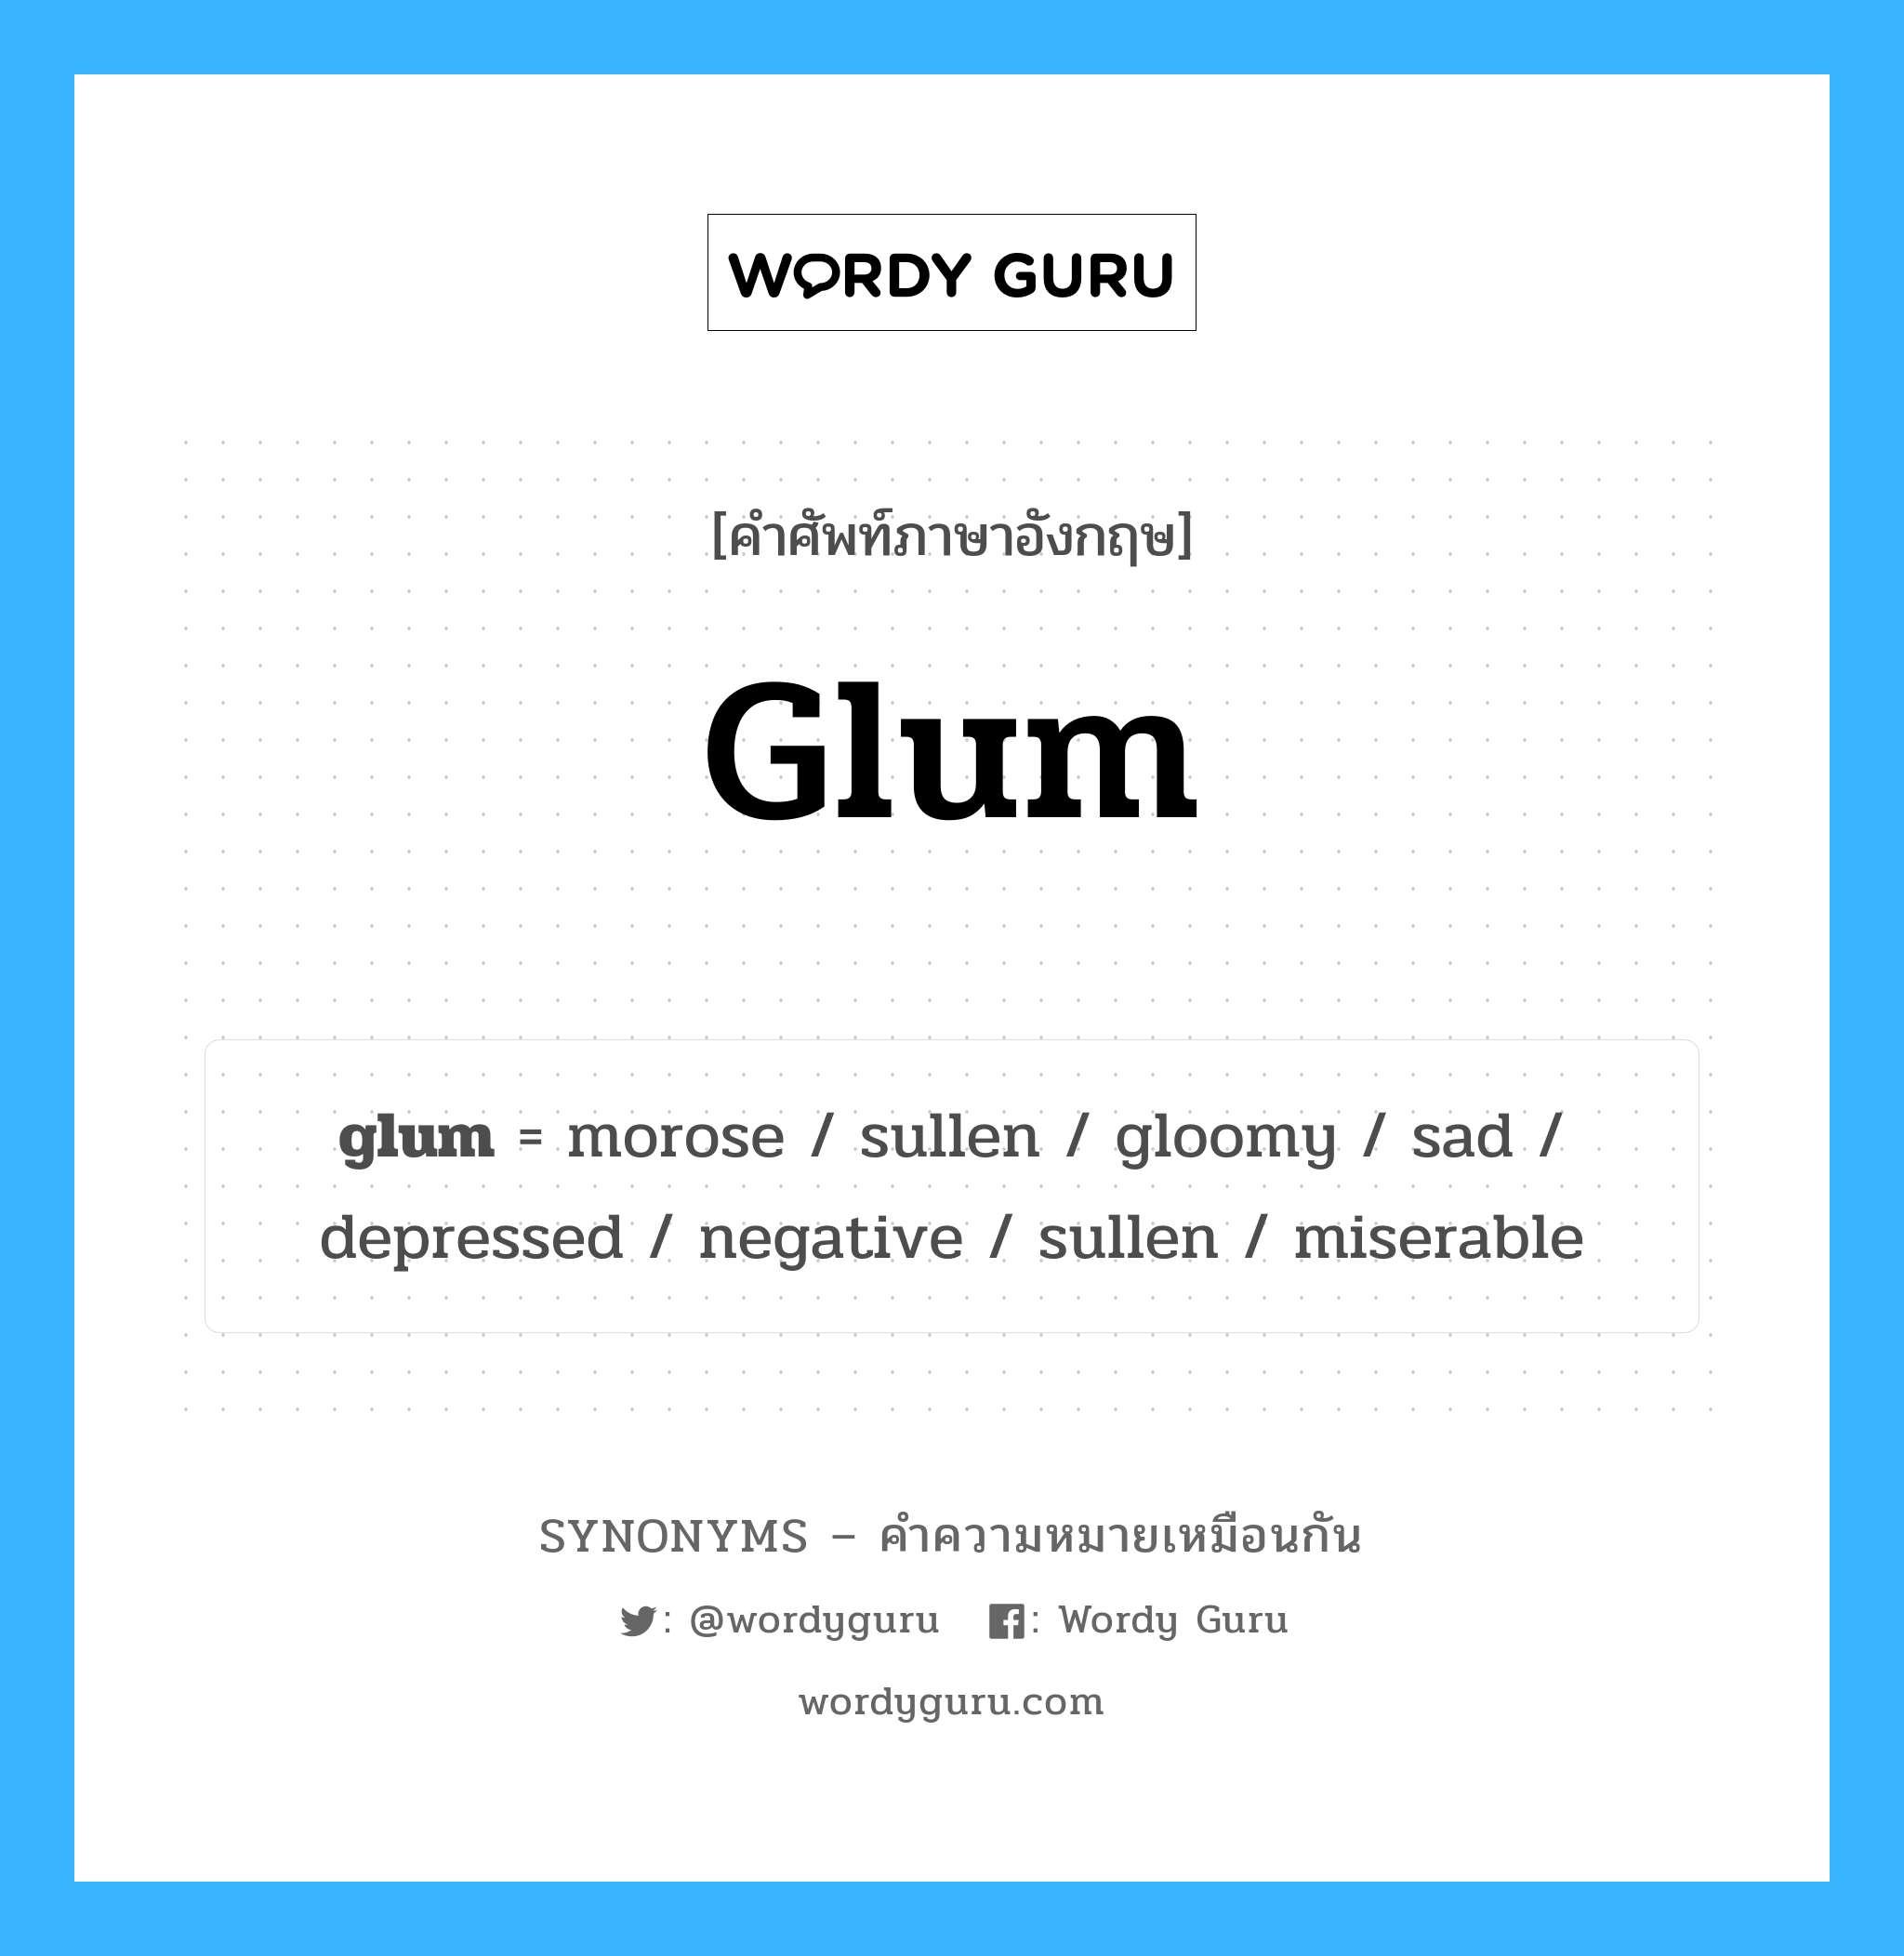 negative เป็นหนึ่งใน glum และมีคำอื่น ๆ อีกดังนี้, คำศัพท์ภาษาอังกฤษ negative ความหมายคล้ายกันกับ glum แปลว่า ค่าลบ หมวด glum